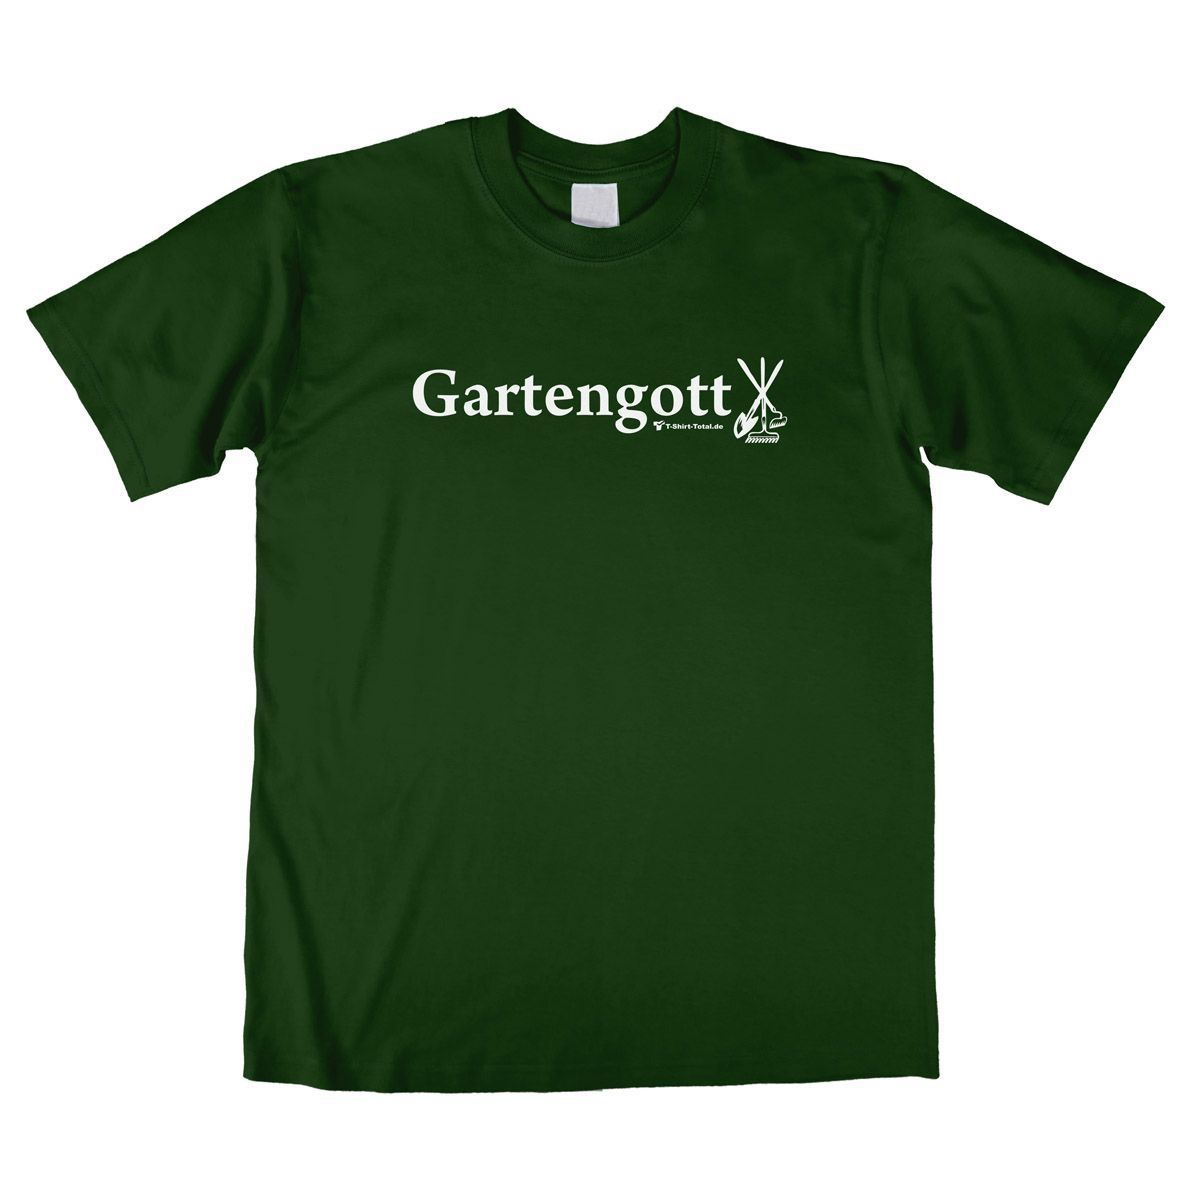 Gartengott Unisex T-Shirt dunkelgrün Extra Large